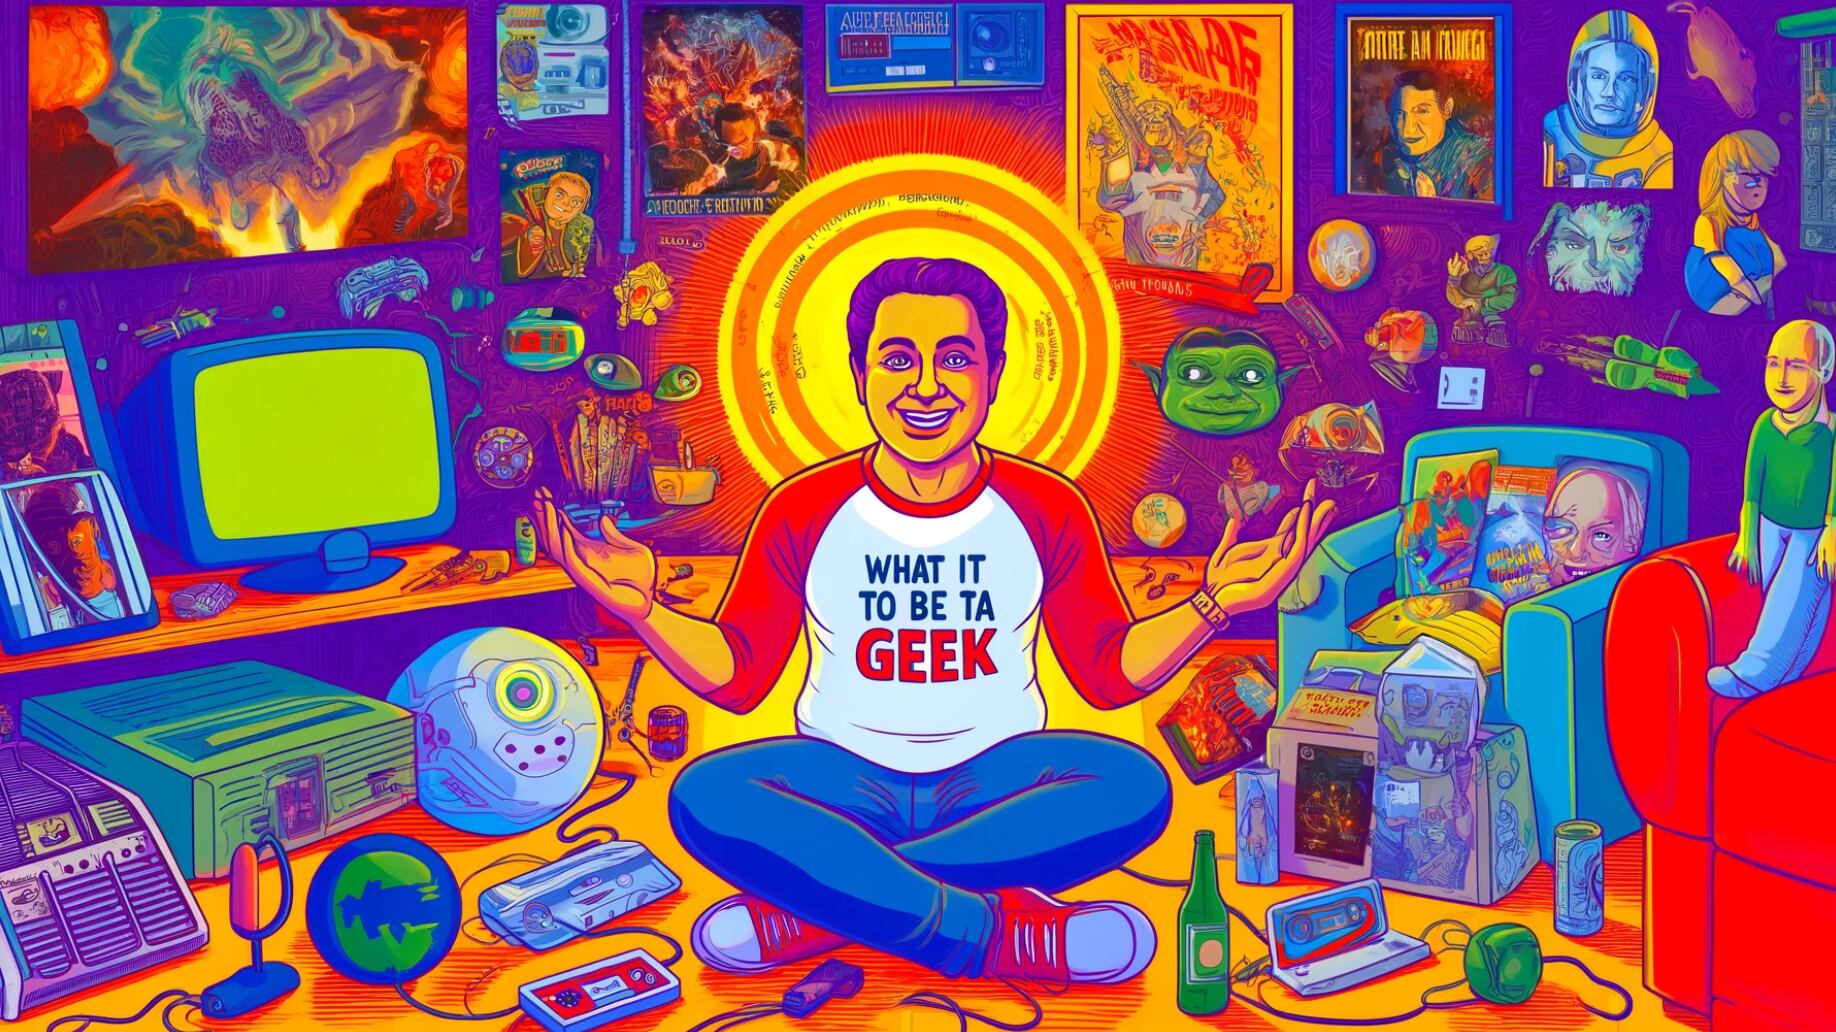 Qué es ser geek según la inteligencia artificial | Imagen: DALL-E